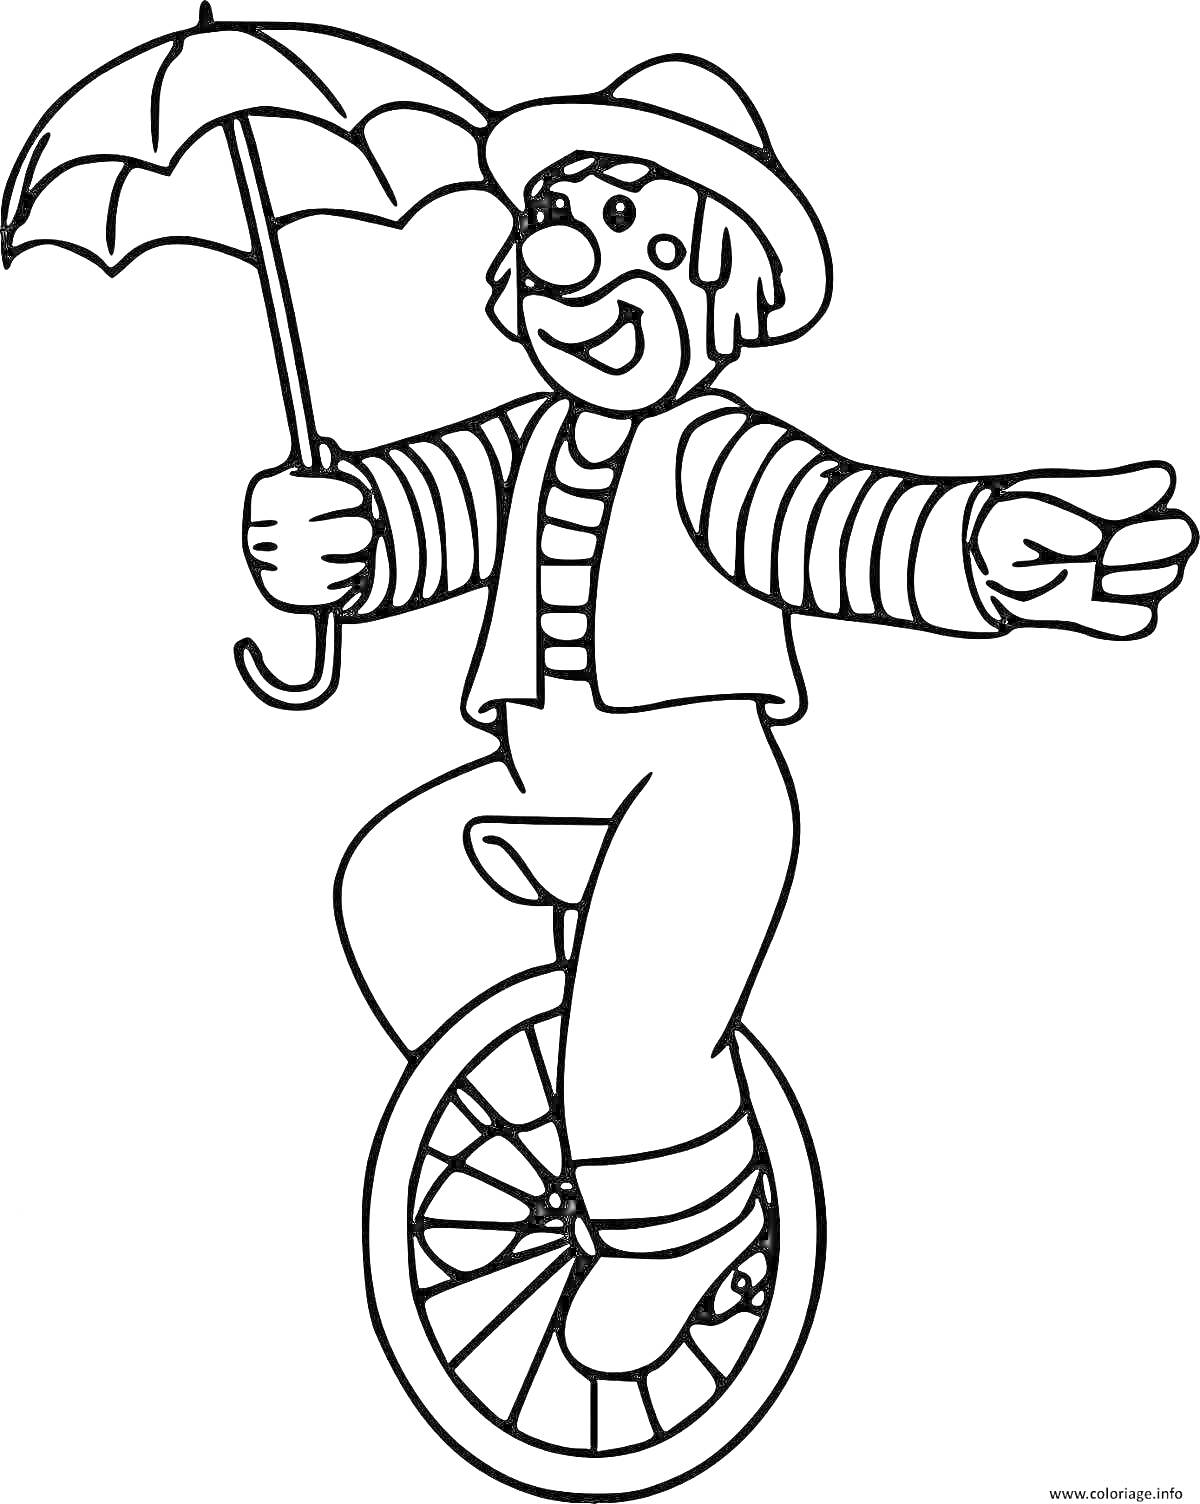 Раскраска Клоун на одноколесном велосипеде с зонтом